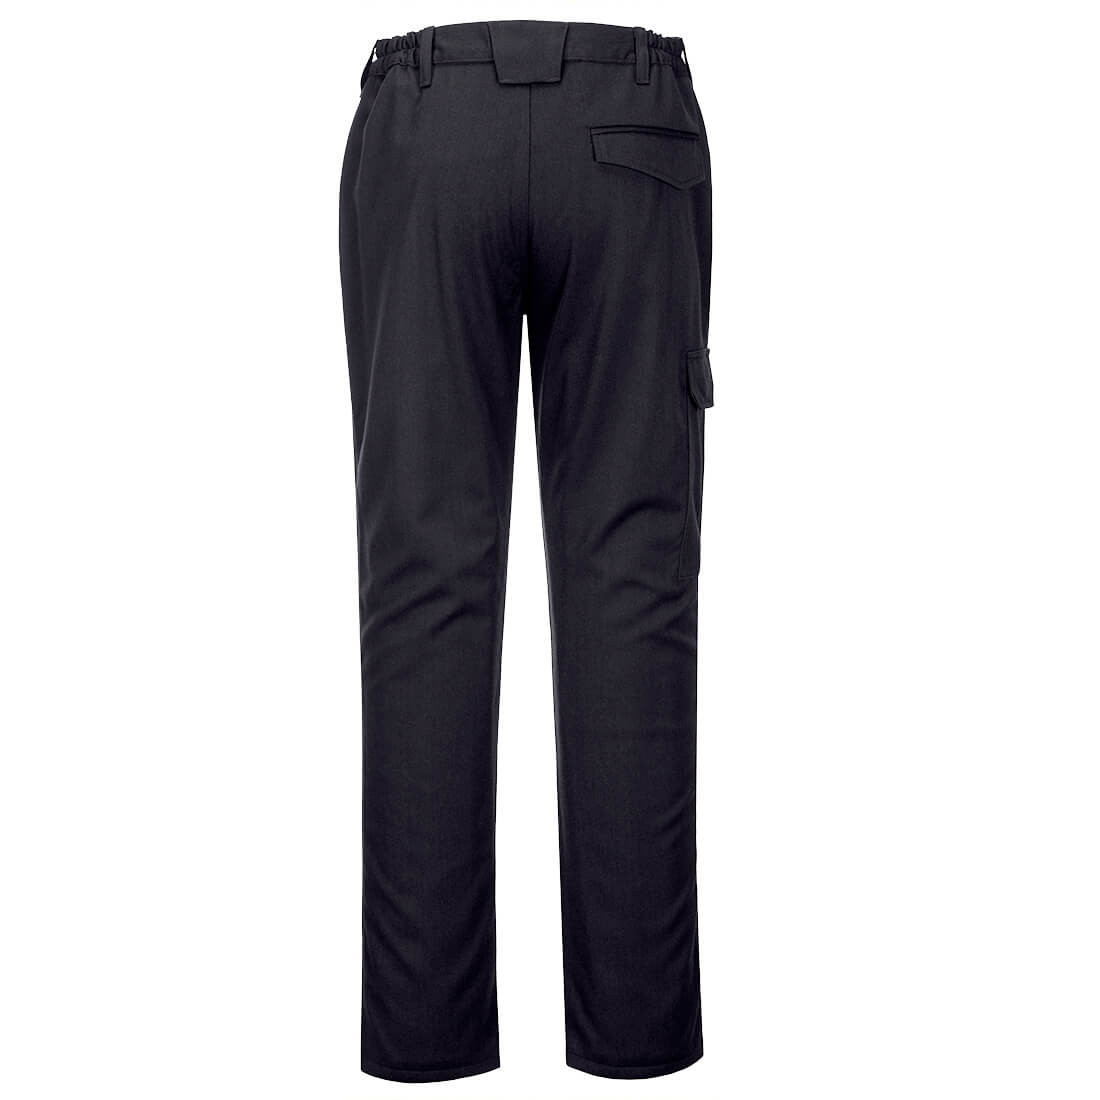 Pantaloni  FR pentru Metal Topit - Imbracaminte de protectie